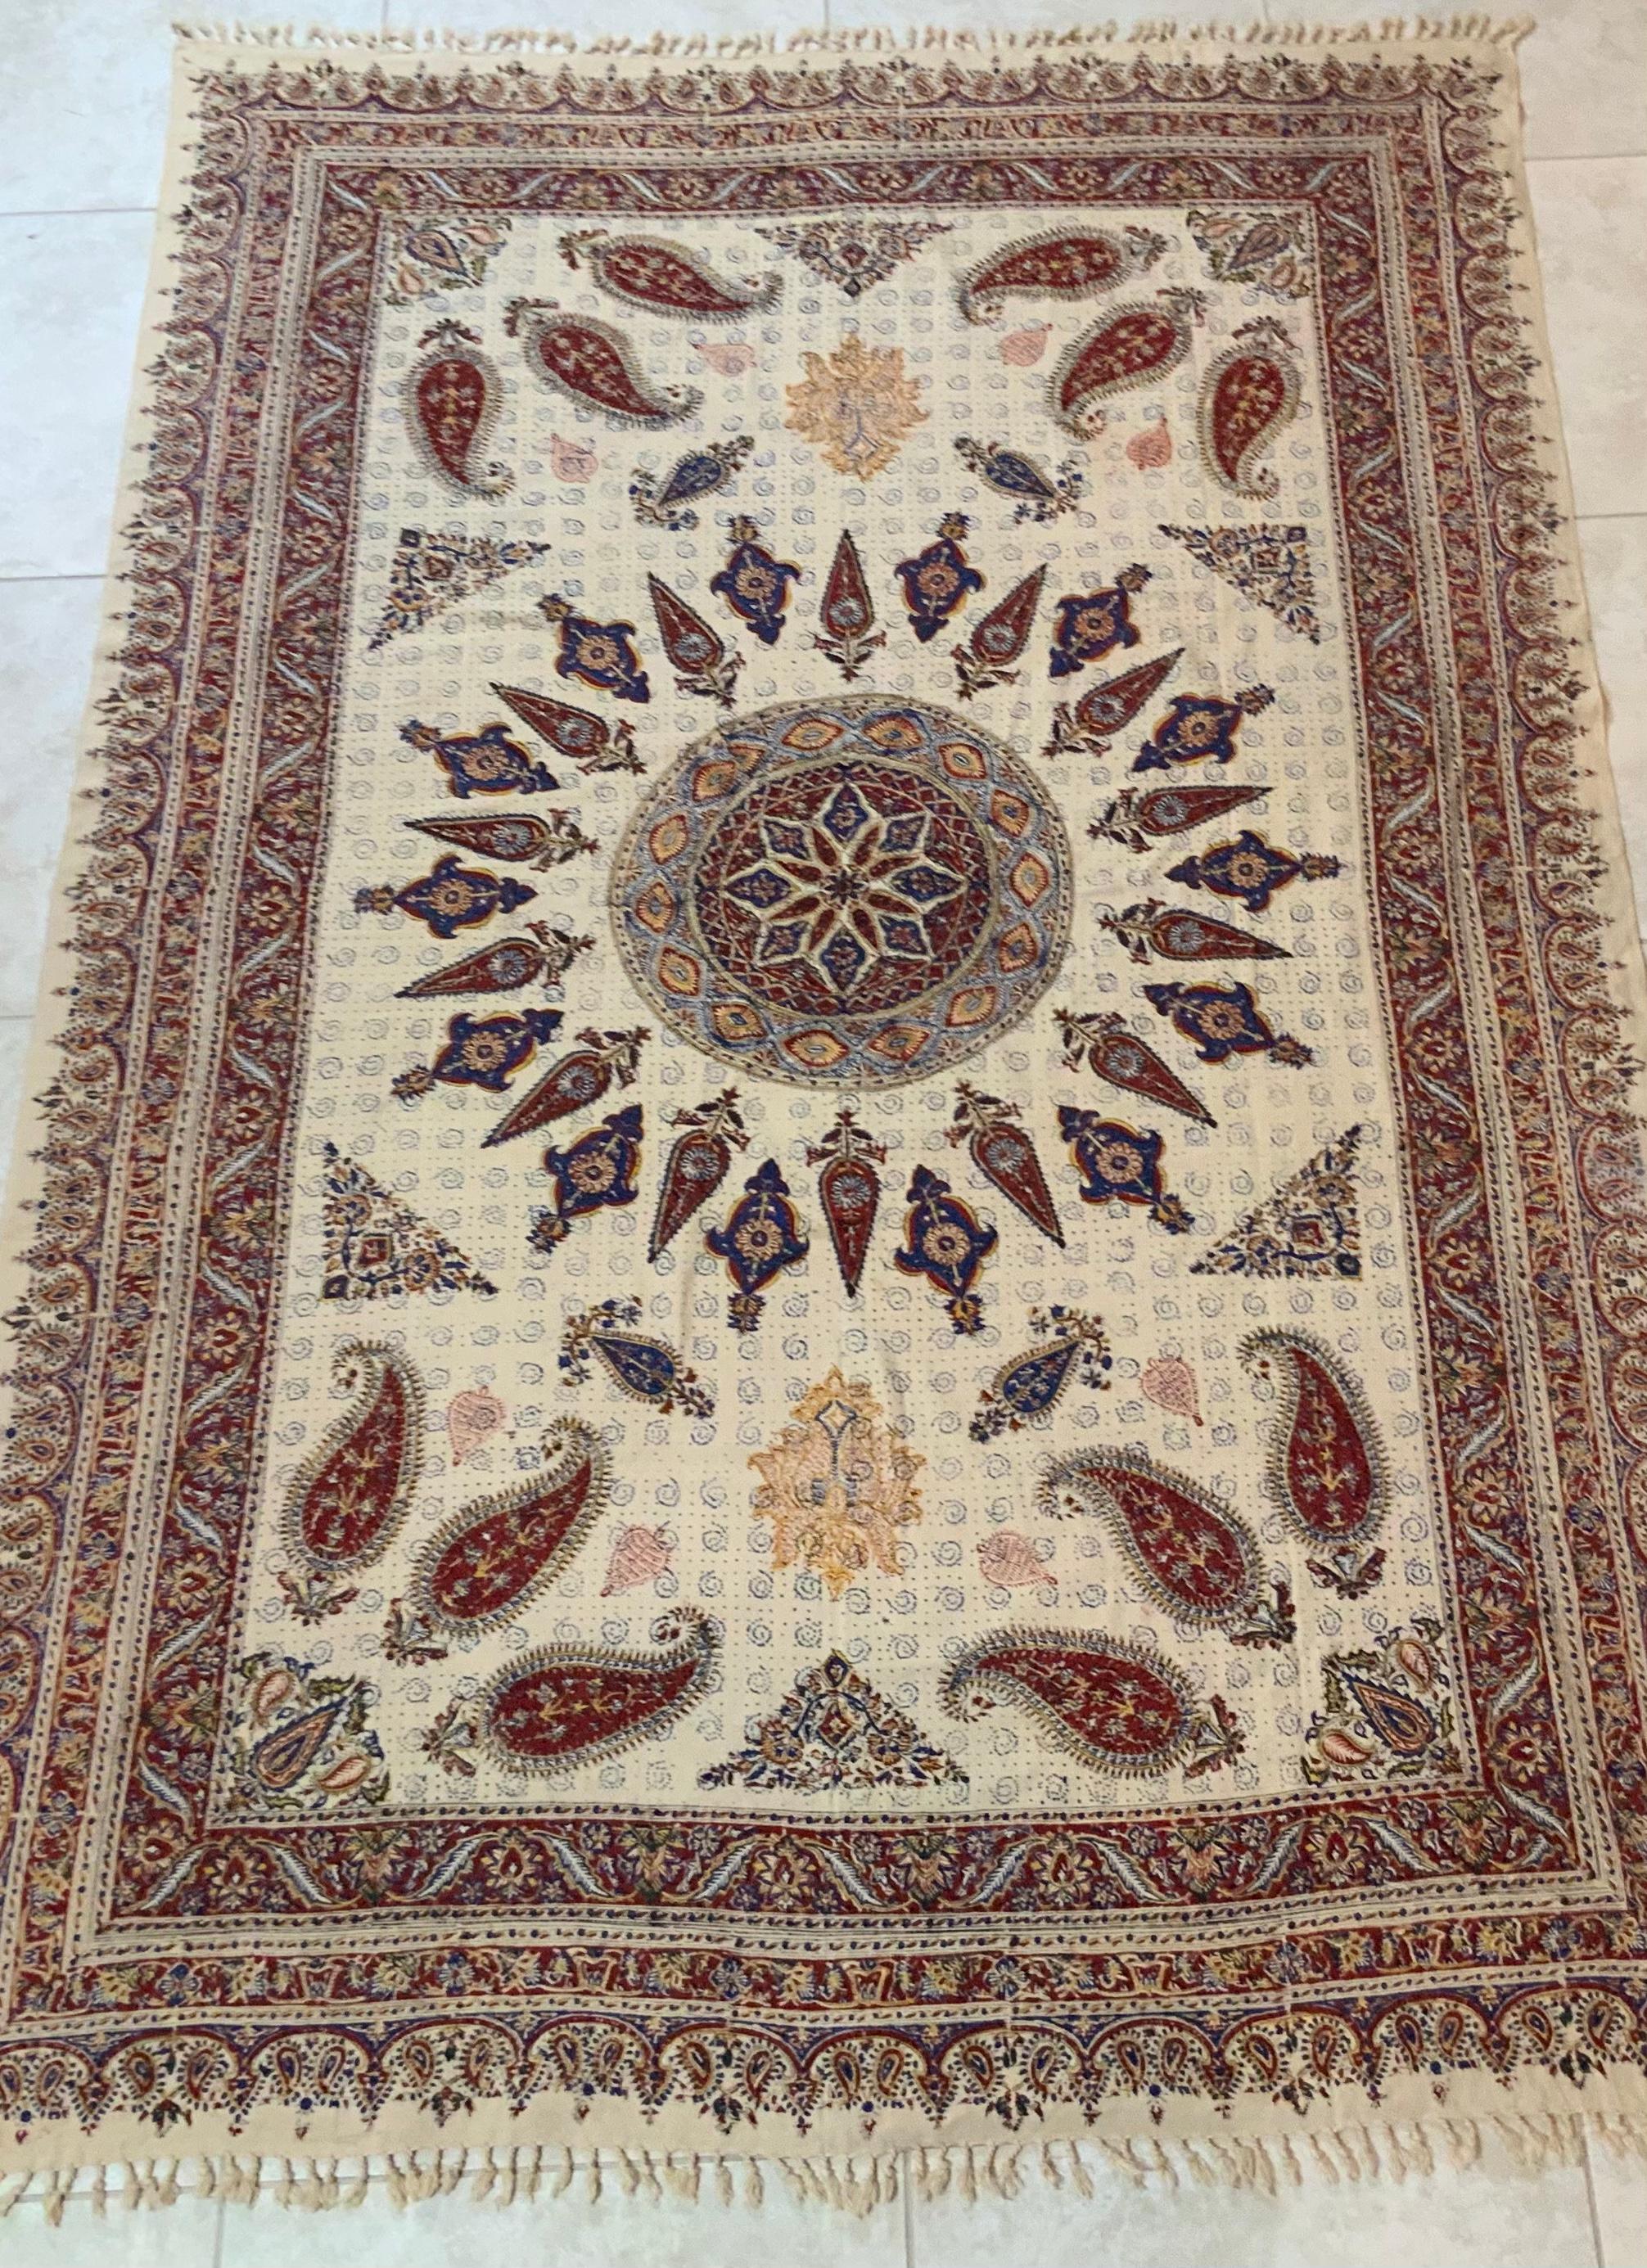 Grand textile persan ancien provenant d'Ispahan, en Iran, avec deux motifs paisley imprimés et un beau centre rond
avec des couleurs bleu clair rouge saumon sur fond crème.
Nettoyé professionnellement et nouveau support en soie.
Peut être utilisé